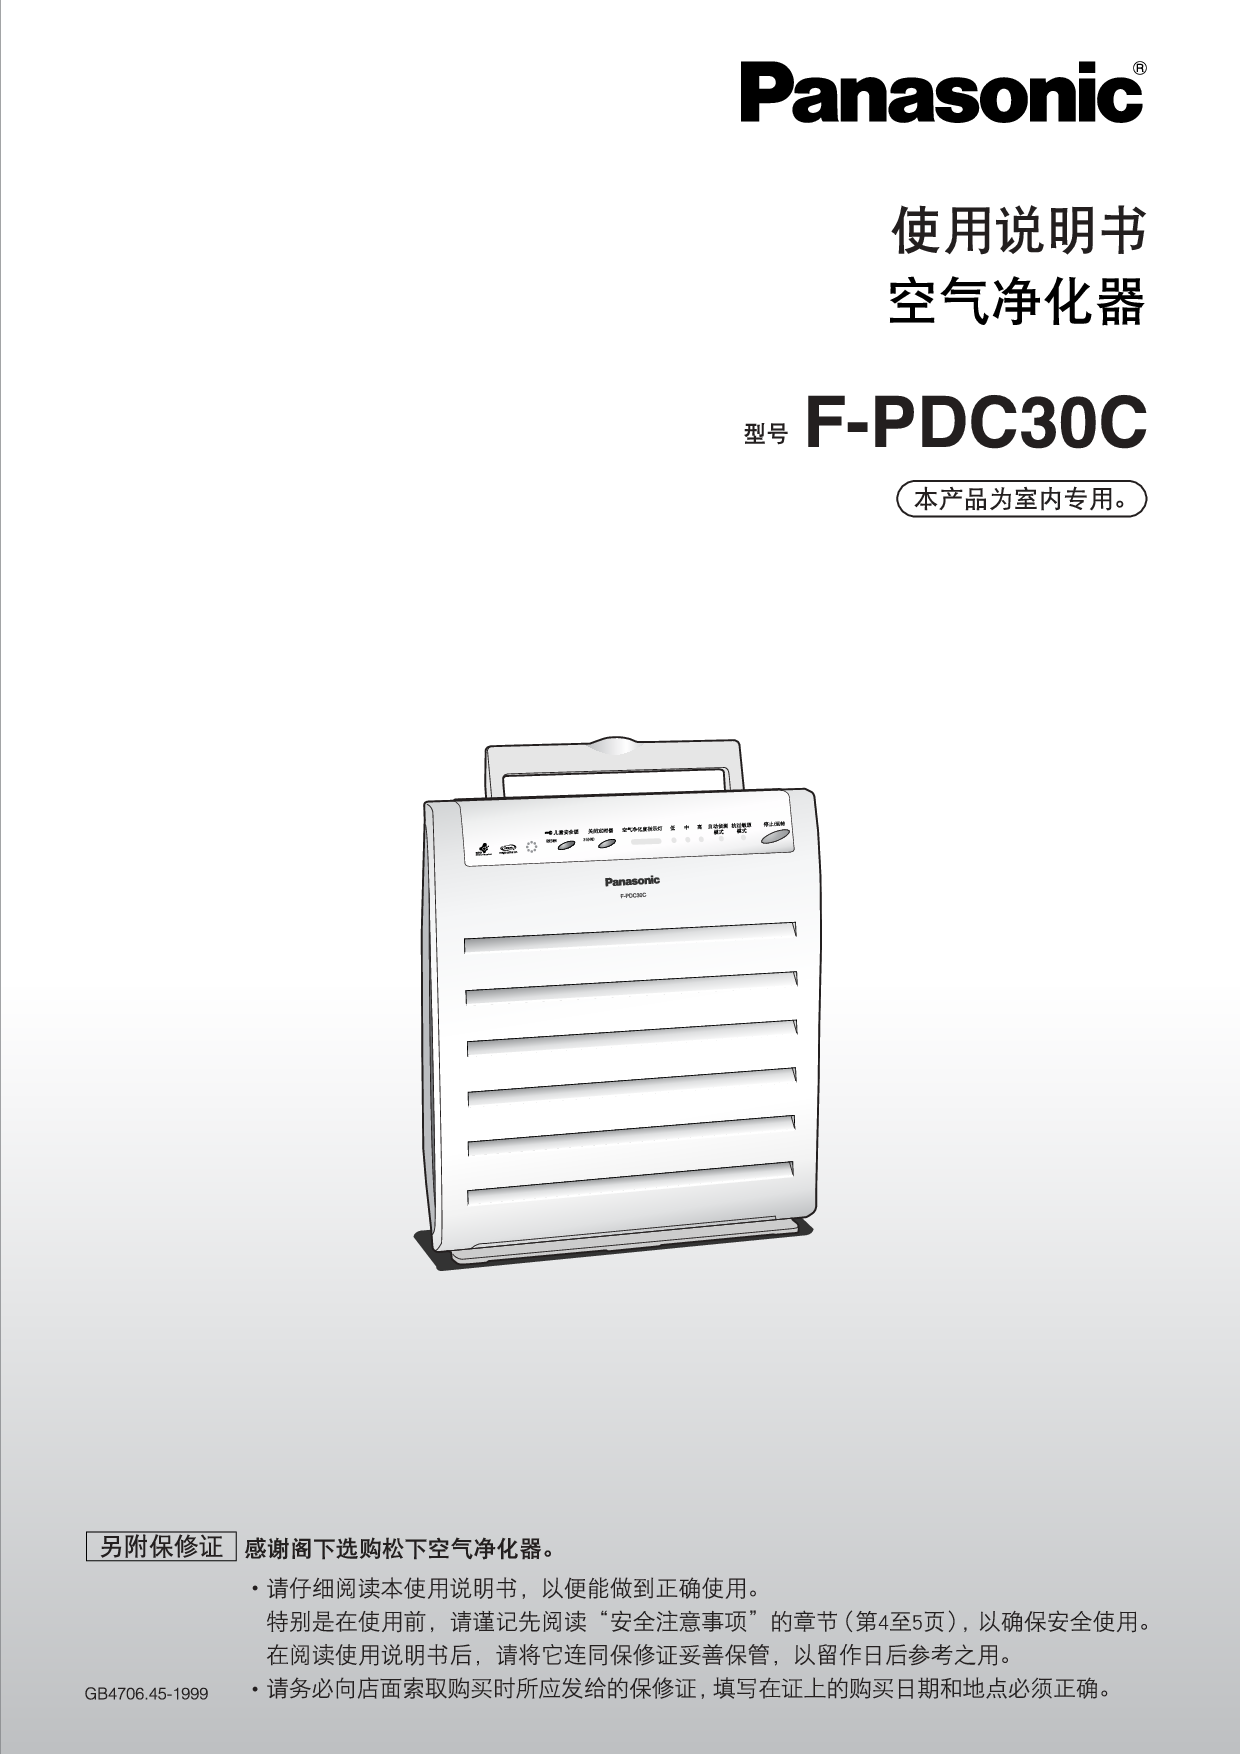 松下 Panasonic F-PDC30C 说明书 封面